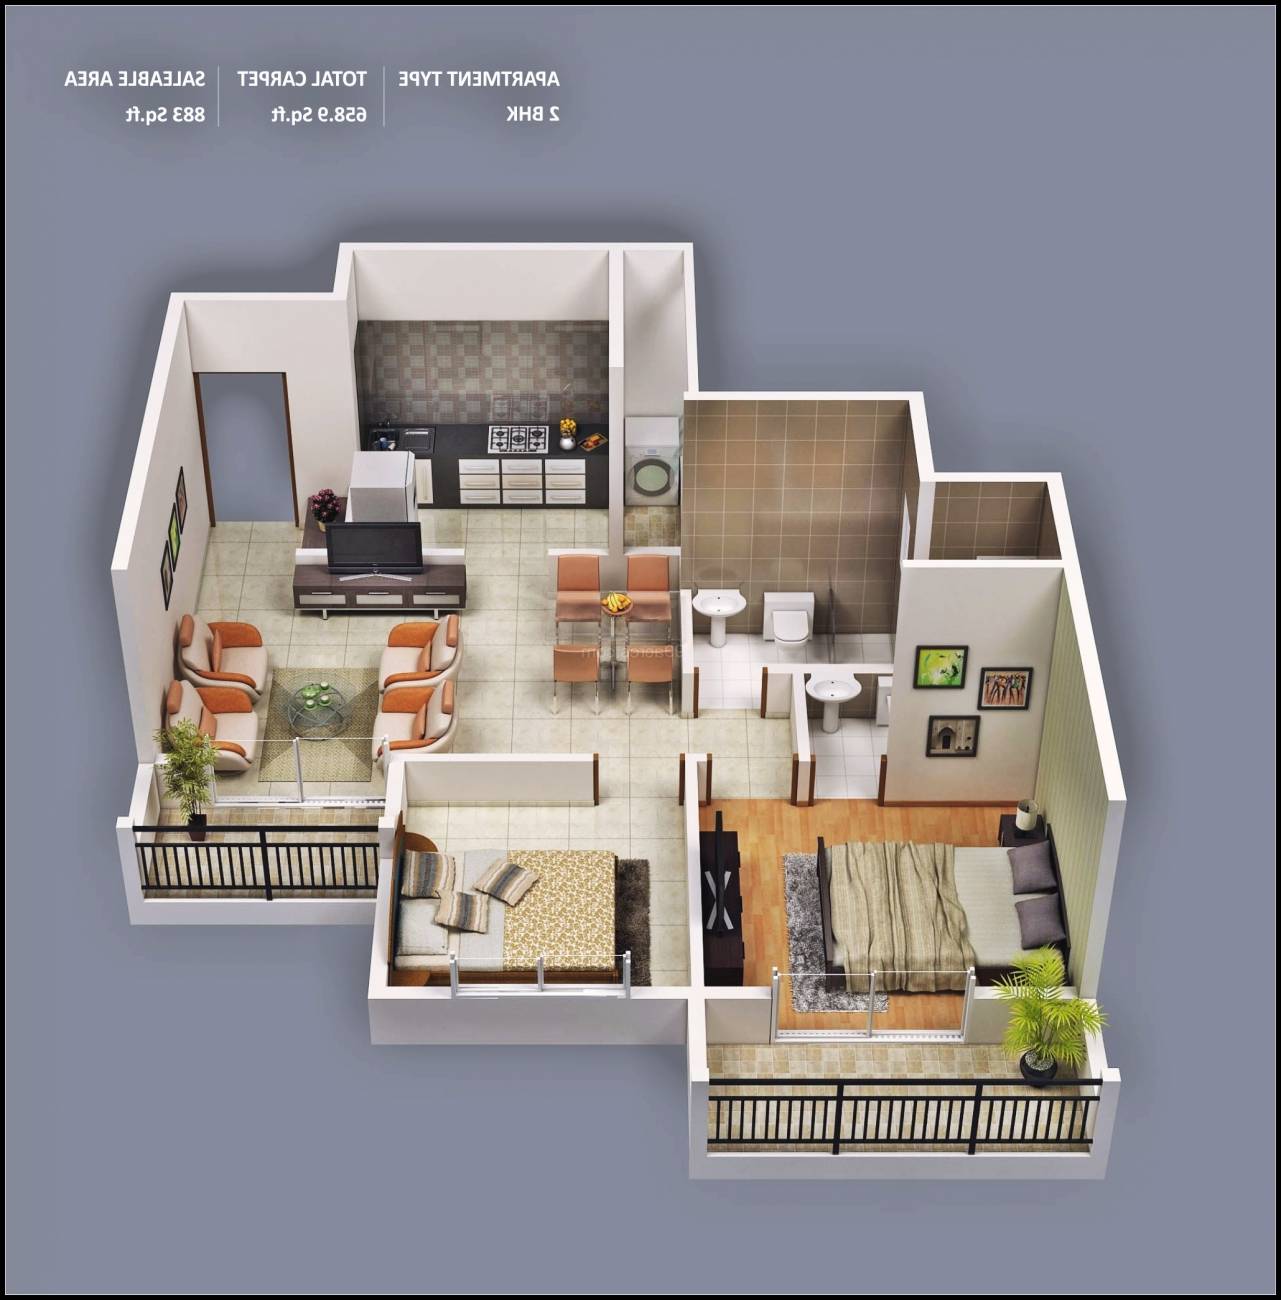 Terbaik Gambar Desain Rumah Sederhana 26 Untuk Desain Rumah Gaya Ide Interior oleh Gambar Desain Rumah Sederhana